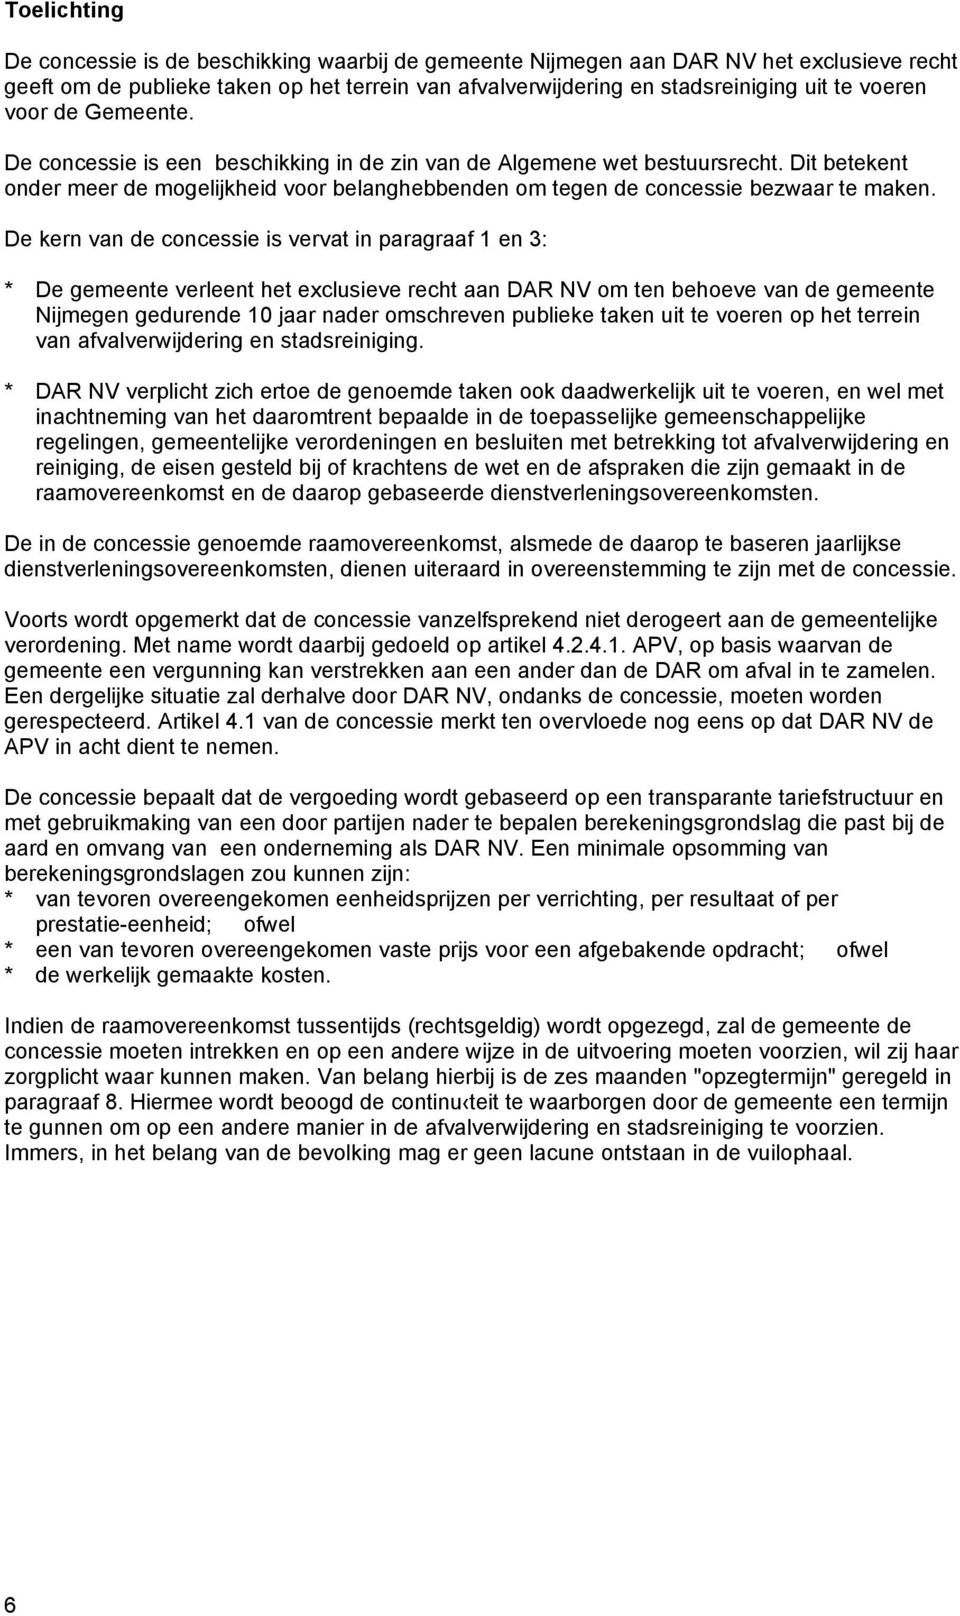 De kern van de concessie is vervat in paragraaf 1 en 3: * De gemeente verleent het exclusieve recht aan DAR NV om ten behoeve van de gemeente Nijmegen gedurende 10 jaar nader omschreven publieke